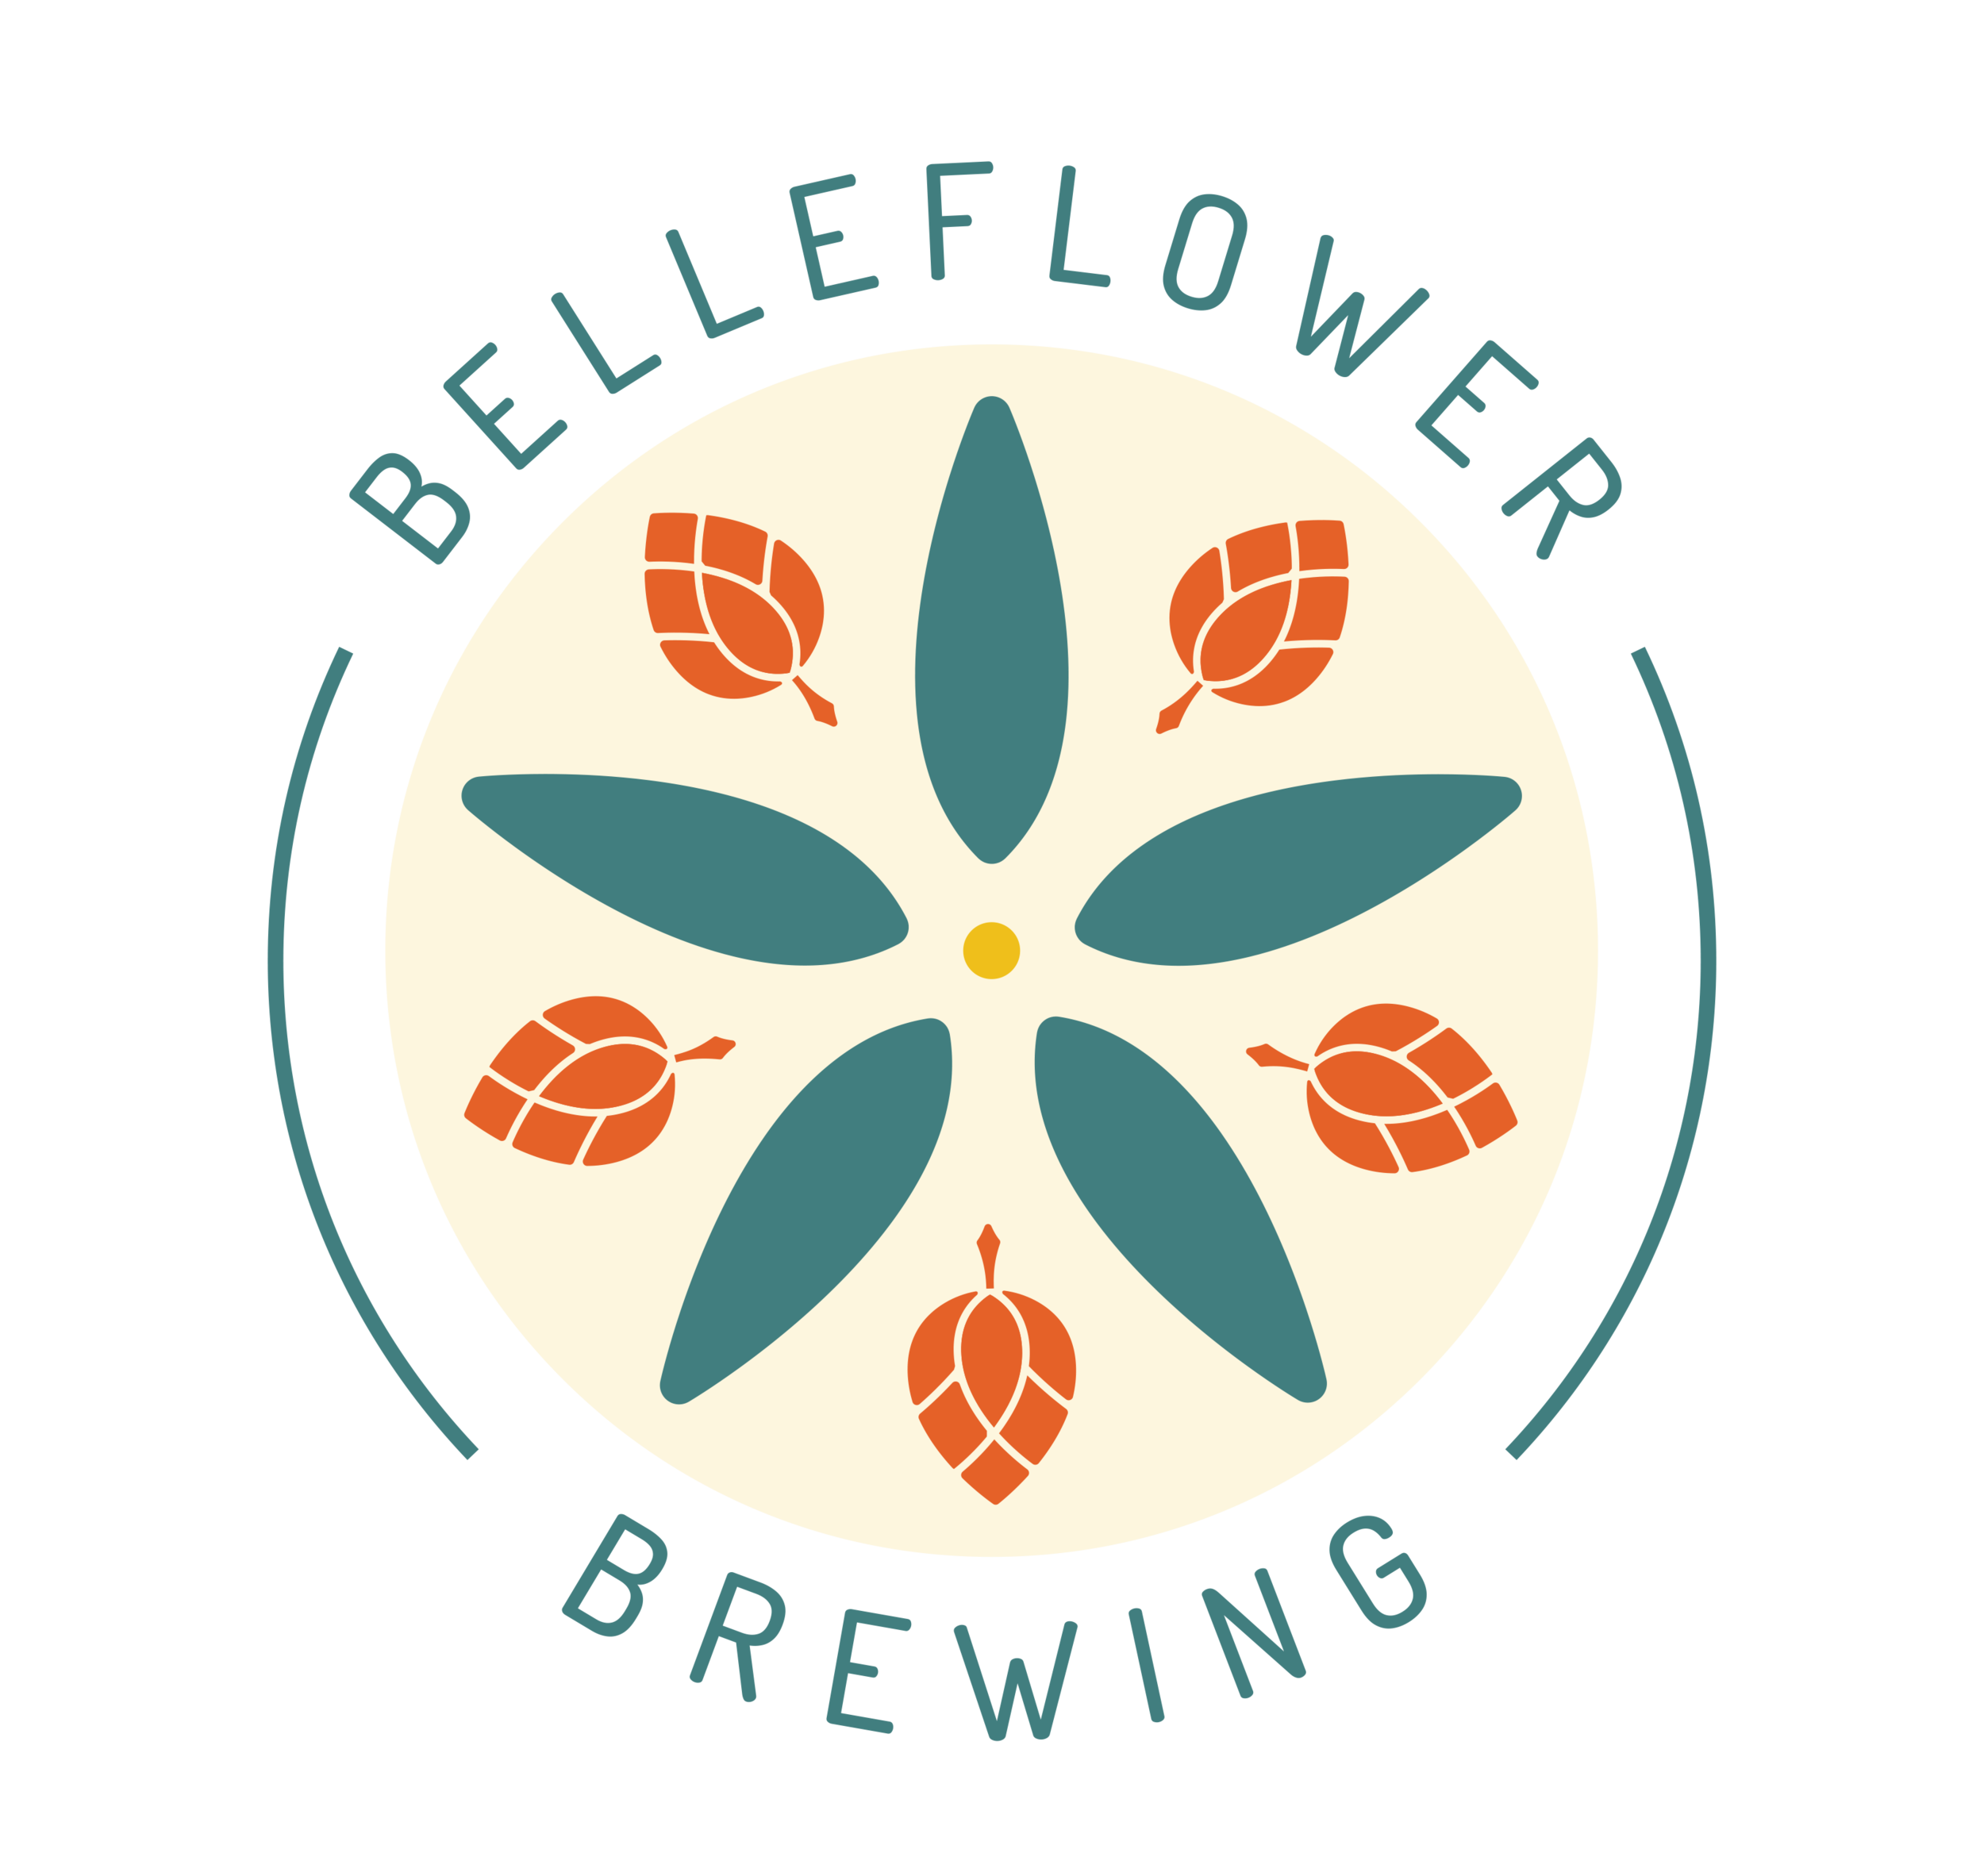 BFB_Belleflower Brewing - Hex Alt Logo1.png